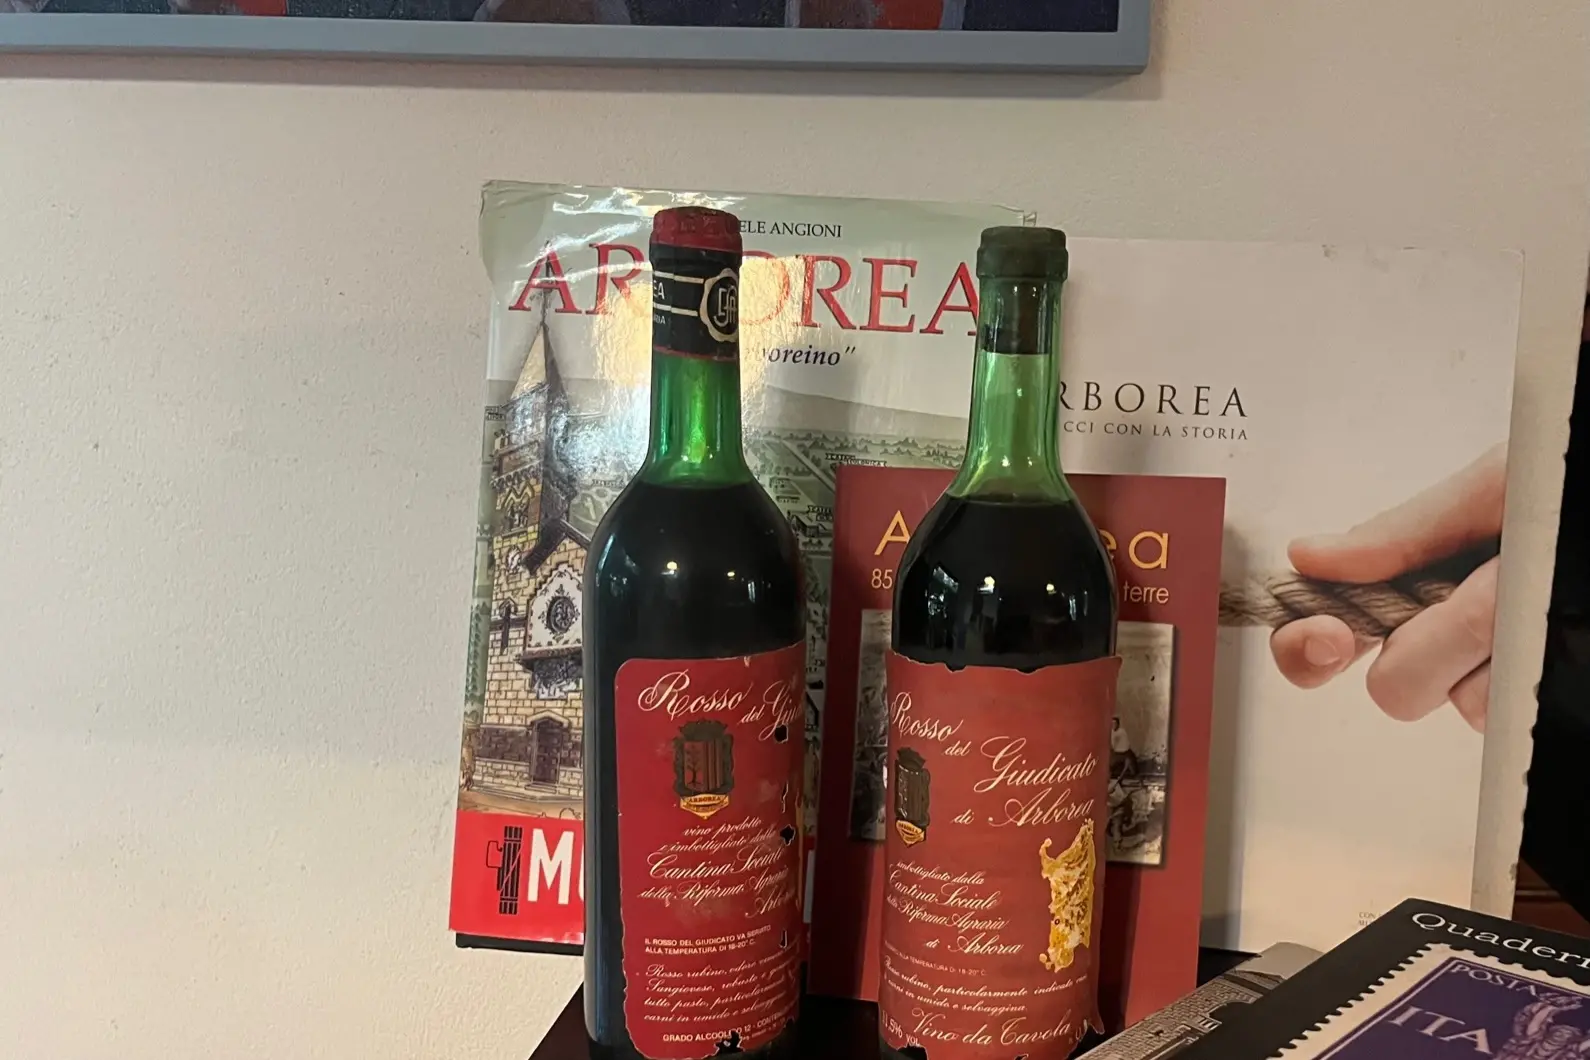 Rosso del Giudicato di Arborea, era il vino prodotto dall'enopolio a base di uva Sangiovese (r. r.)